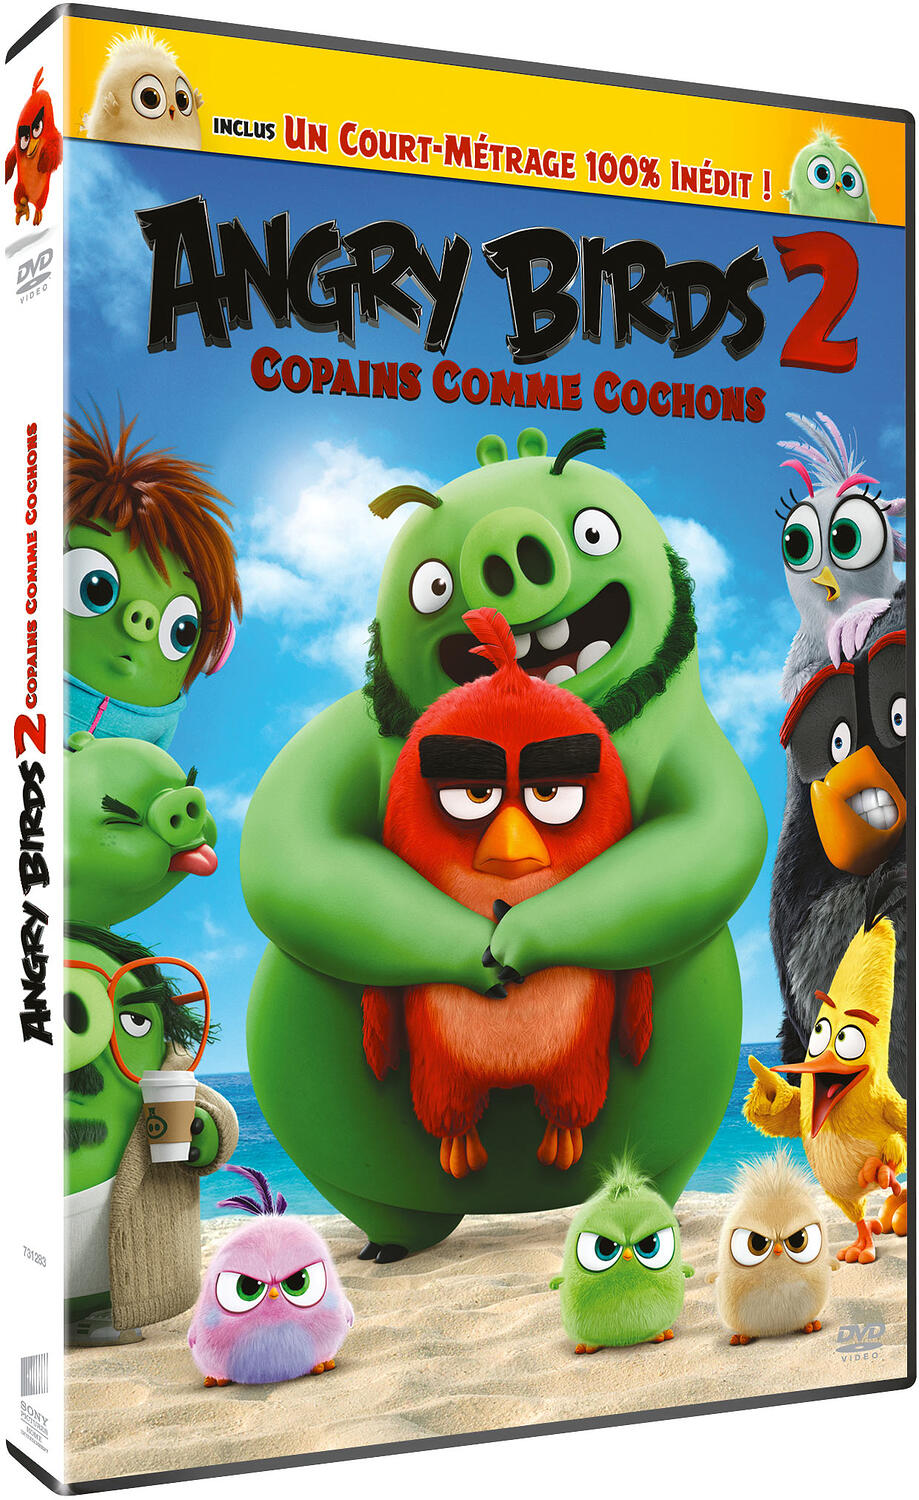 Couverture de : Angry Birds v.2, Copains comme cochons